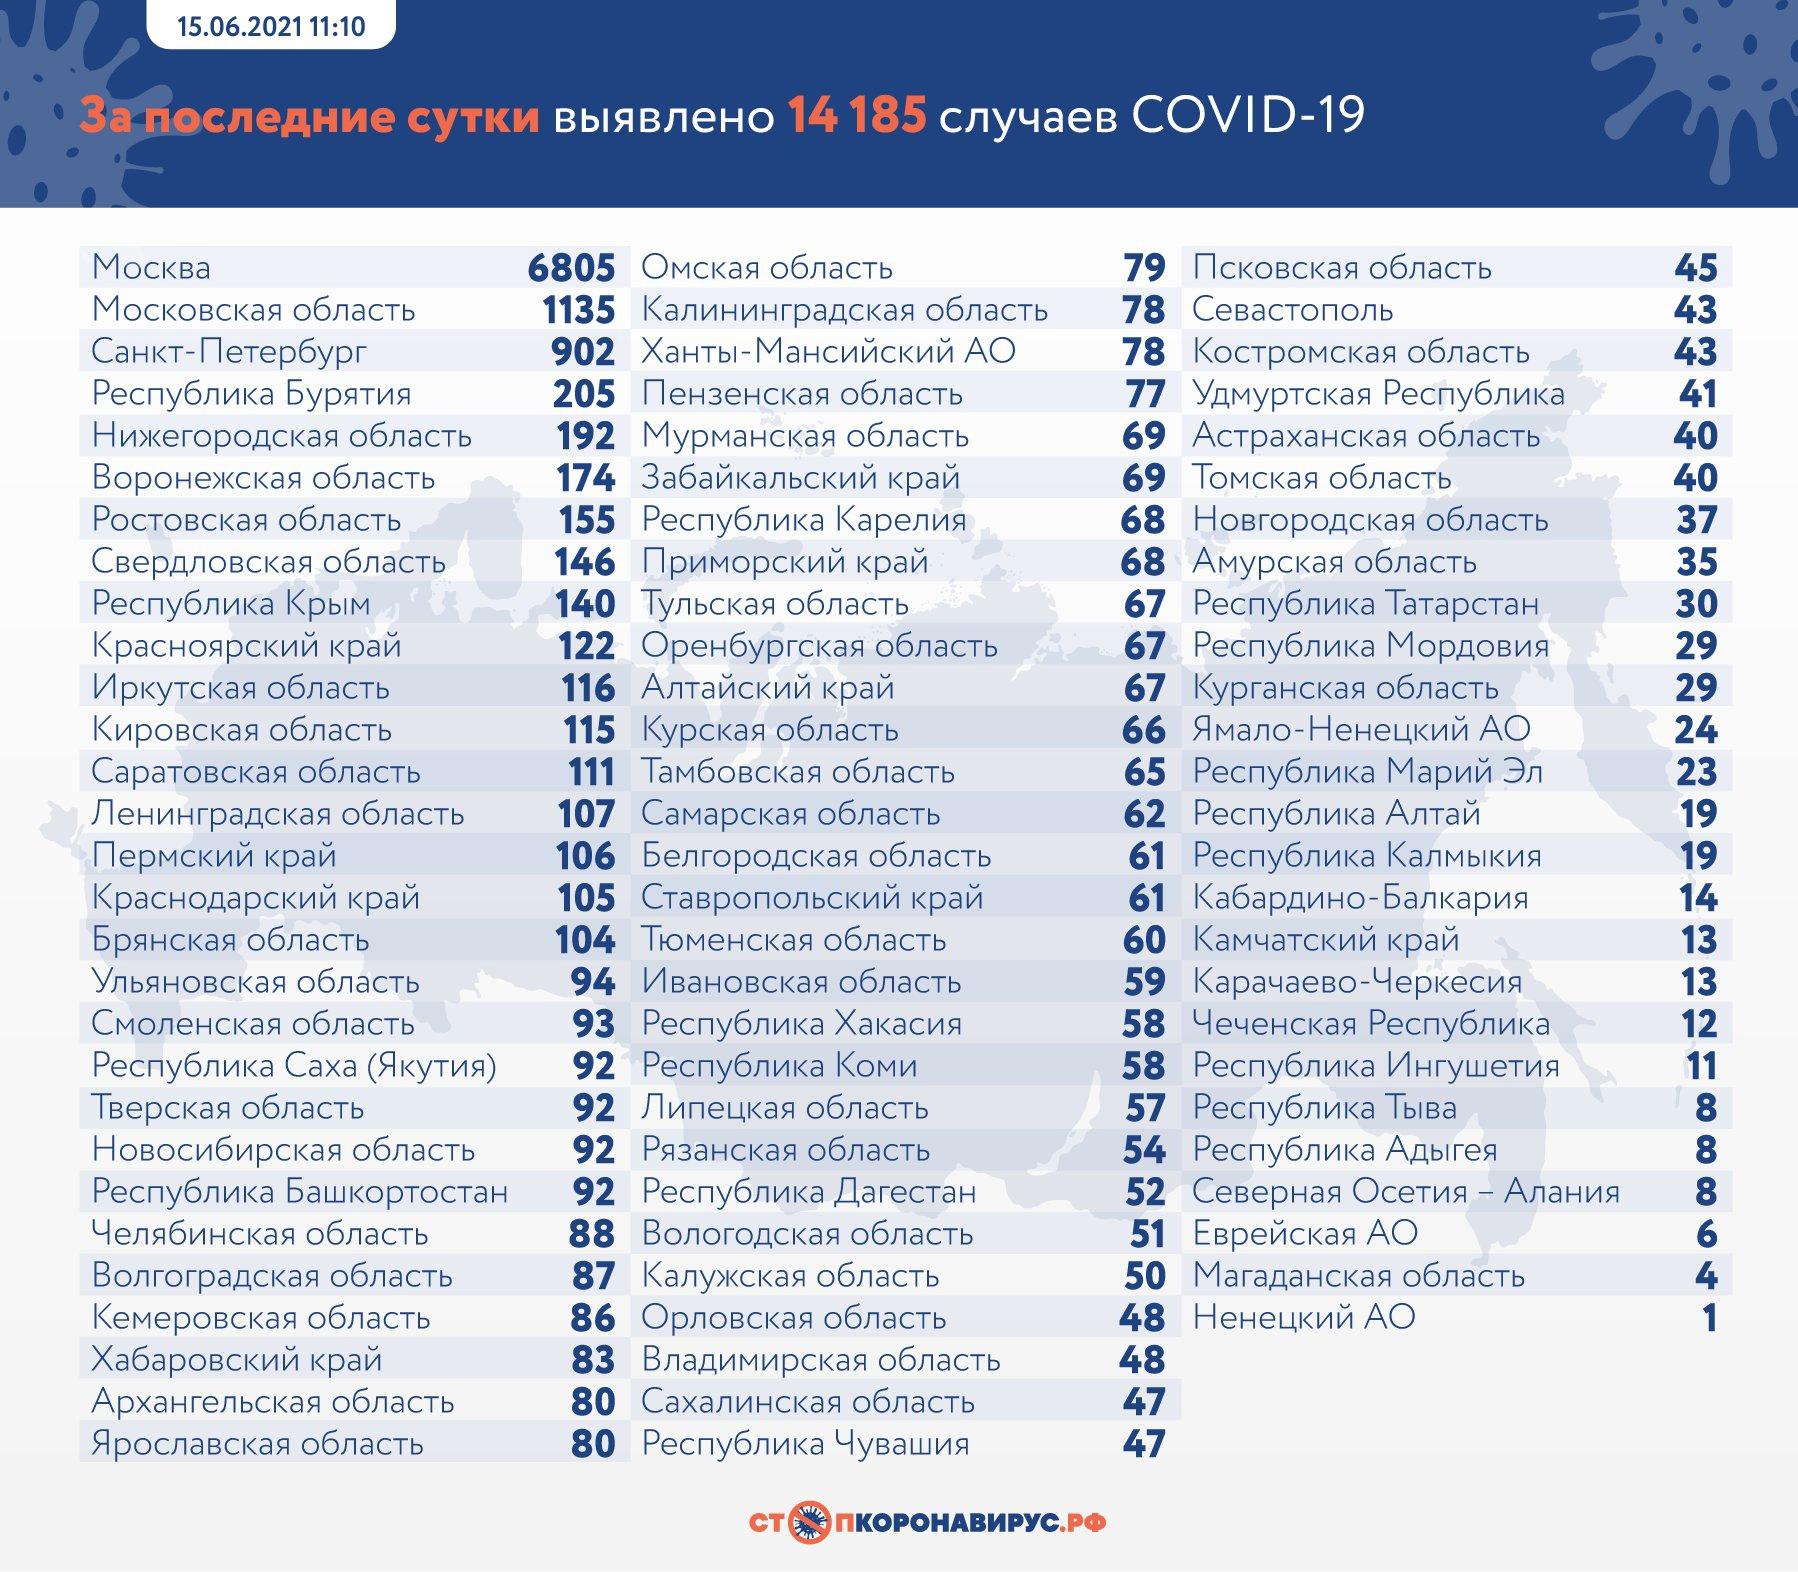 Фото 14 185 случаев заражения COVID-19 выявили в России за сутки 3